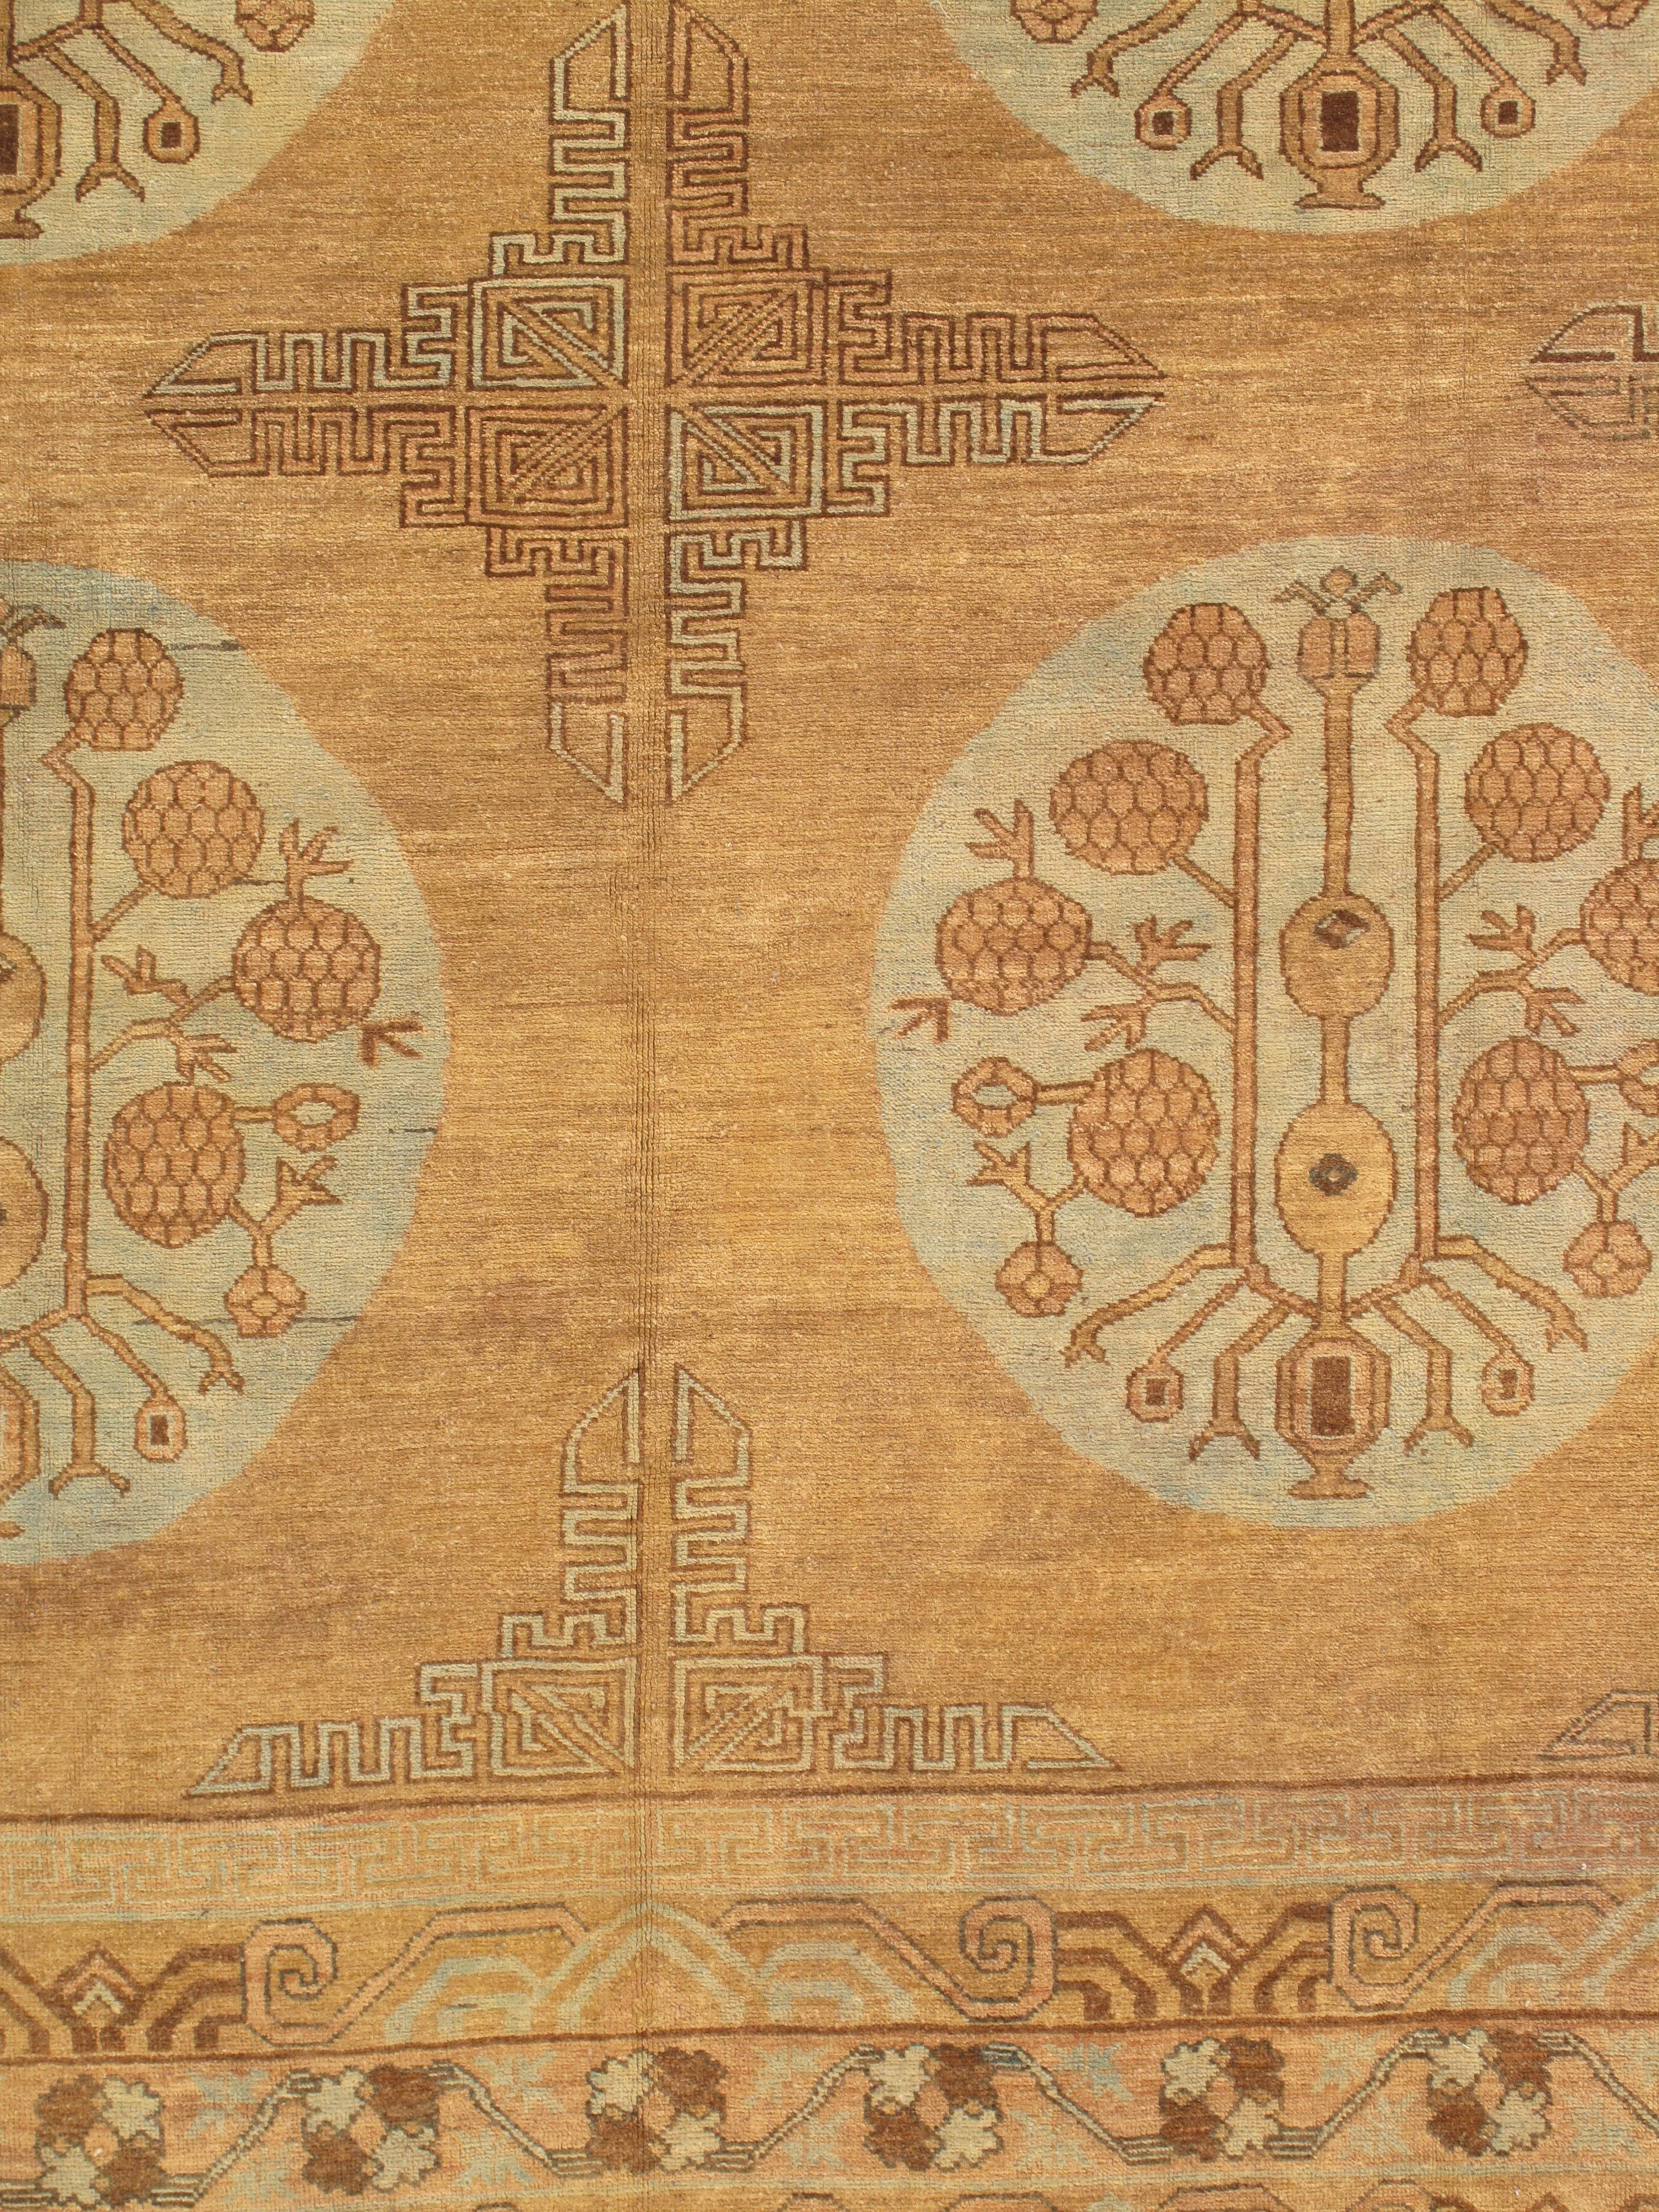 Les tapis vintage de Khotan sont d'exquises pièces d'art tissé provenant de l'ancienne ville-oasis de Khotan, située le long de l'ancienne route de la soie dans ce qui est aujourd'hui la région autonome ouïgoure du Xinjiang, en Chine. Ces tapis sont